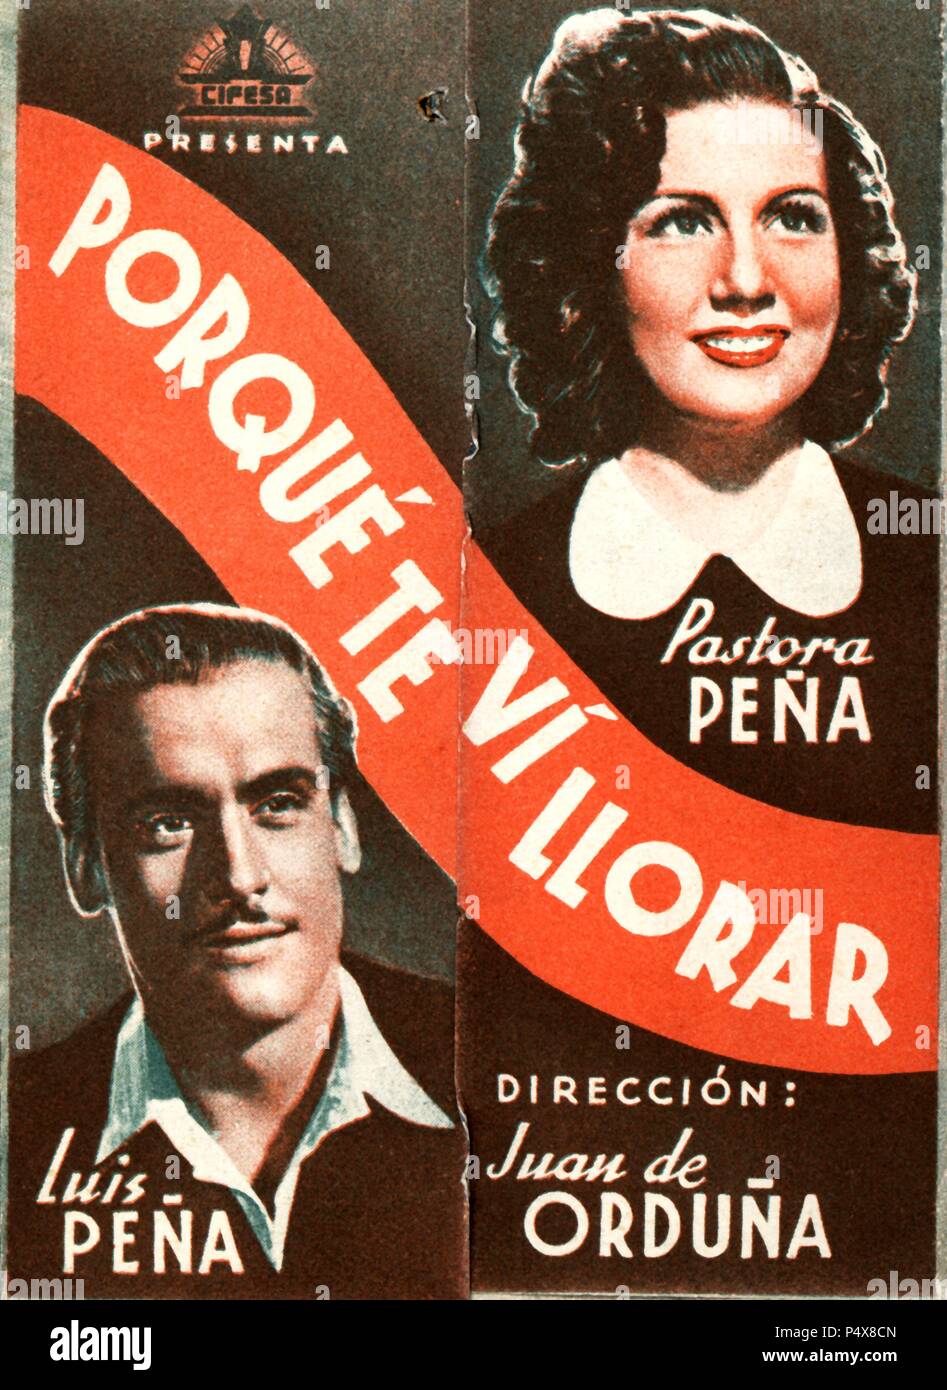 Cartel de la película Porque te vi llorar, con Luis Peña y Pastora Peña, dirigida por Juan de Orduña. España, 1941. Stock Photo